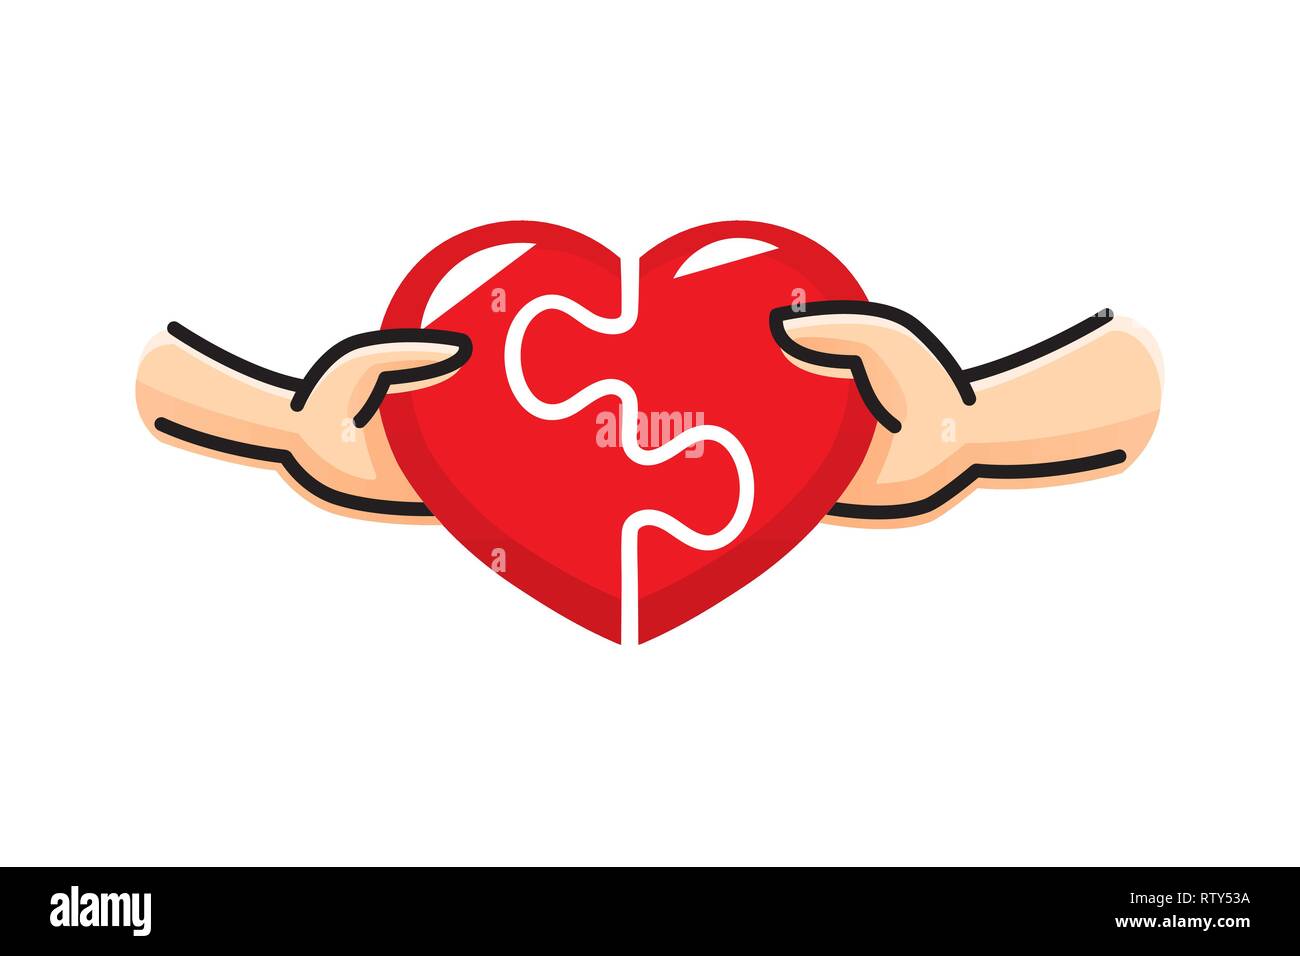 Mann und Frau die rote Herz Puzzle zusammen. Liebe und Partnerschaft. Konzept der Valentinstag. Herzen von zwei Teile eines Puzzles. Vektor illustrati Stock Vektor